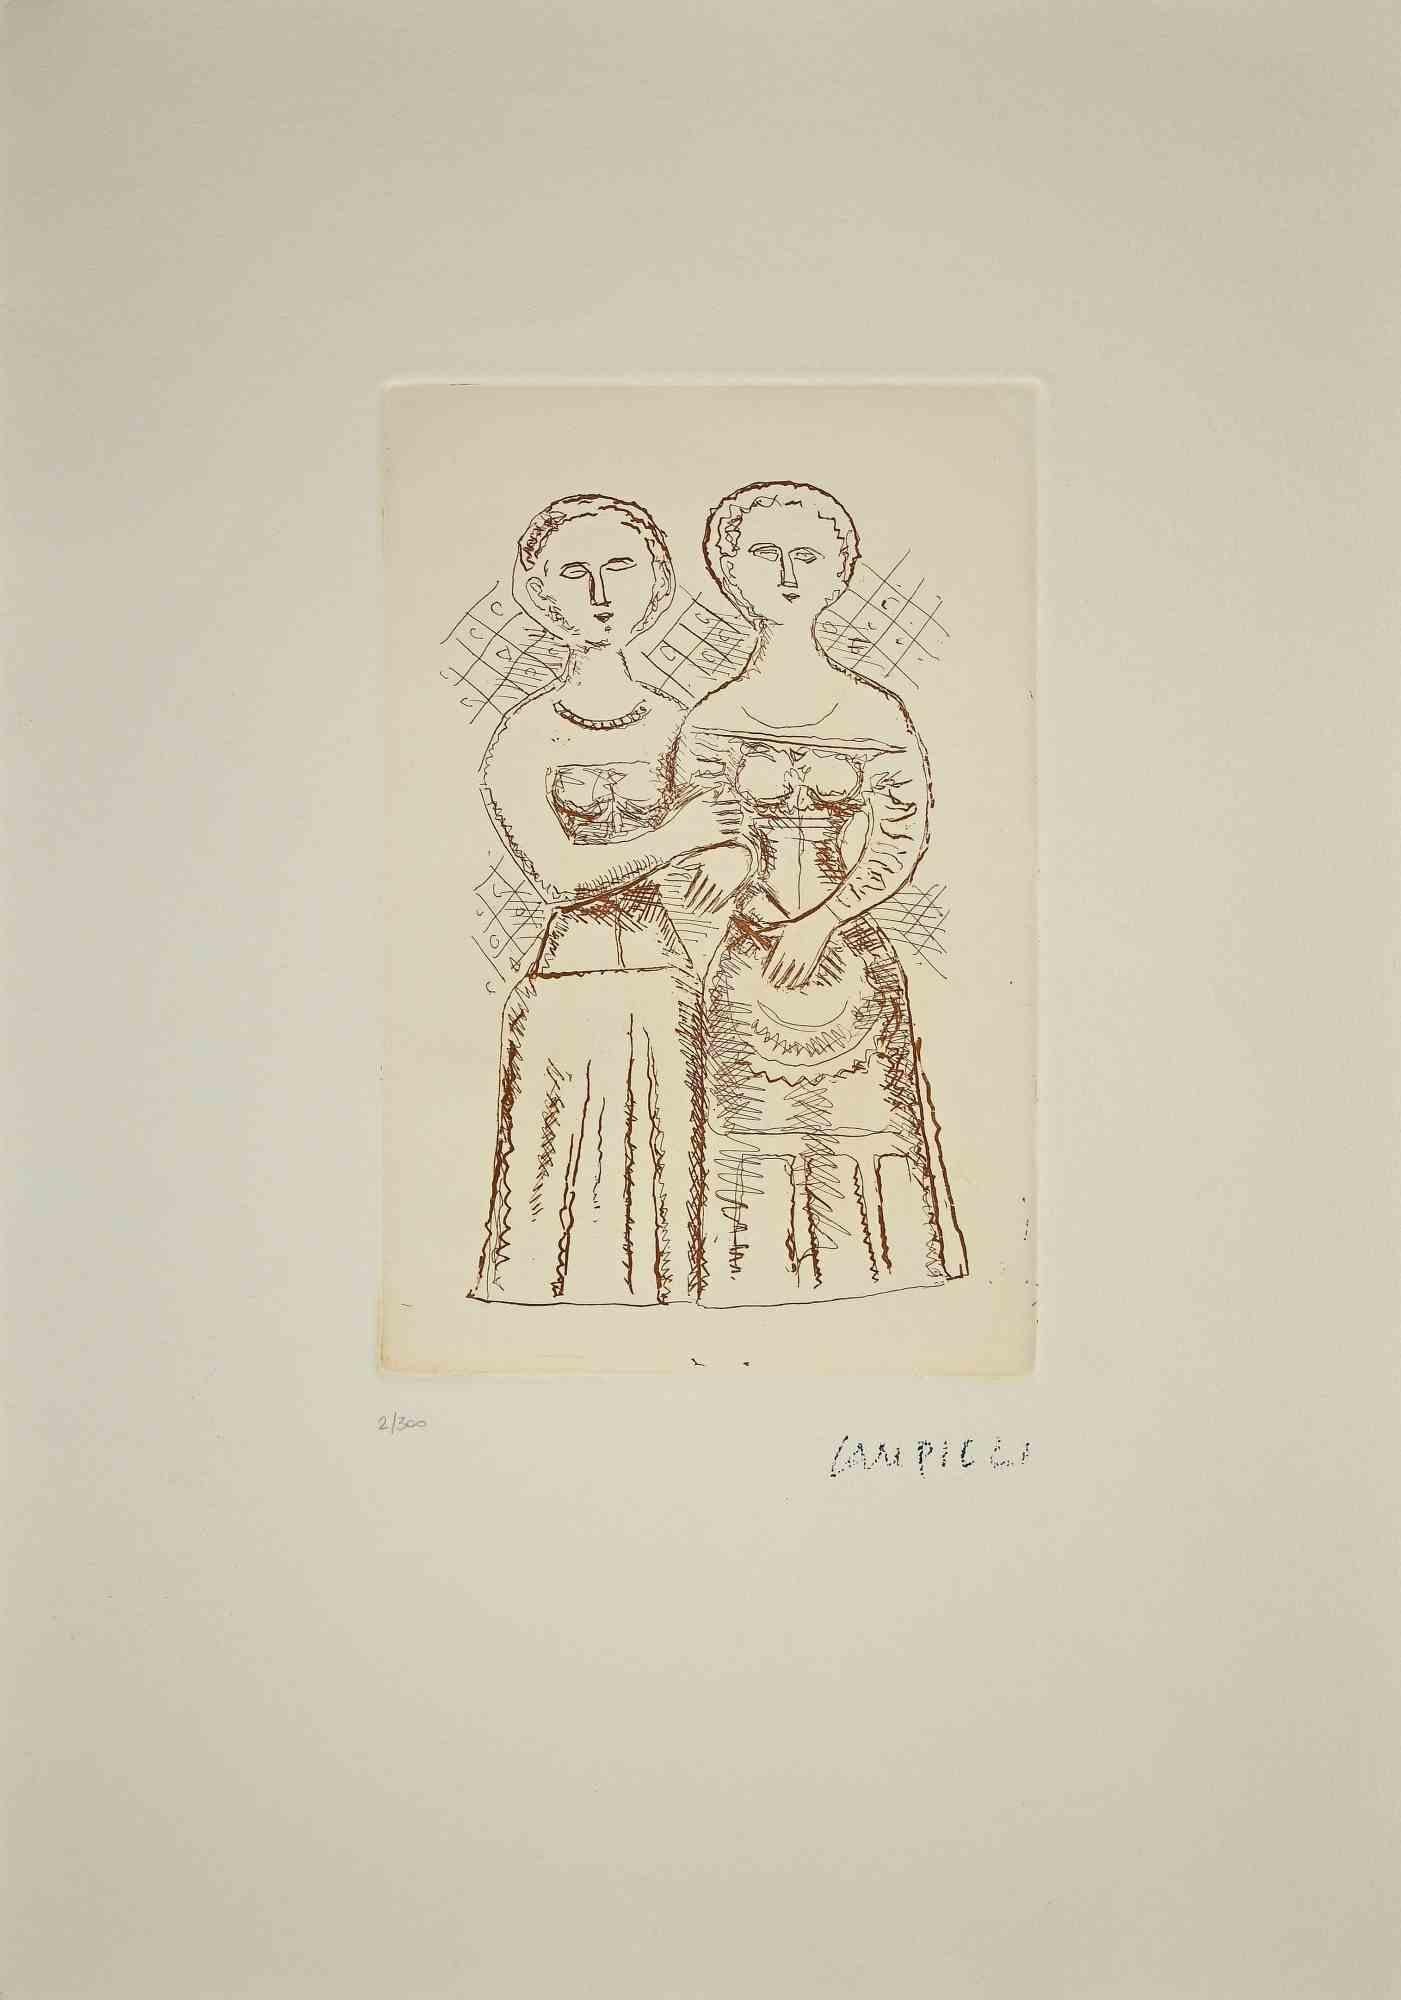 Die beiden Frauen sind ein Originaldruck von Massimo Campigli aus den Jahren 1970/1971.

Schöne Radierung und Kaltnadel auf Papier.

Dieses Kunstwerk gehört zu einer Reihe von Werken, die in der letzten Schaffensperiode des Künstlers entstanden sind